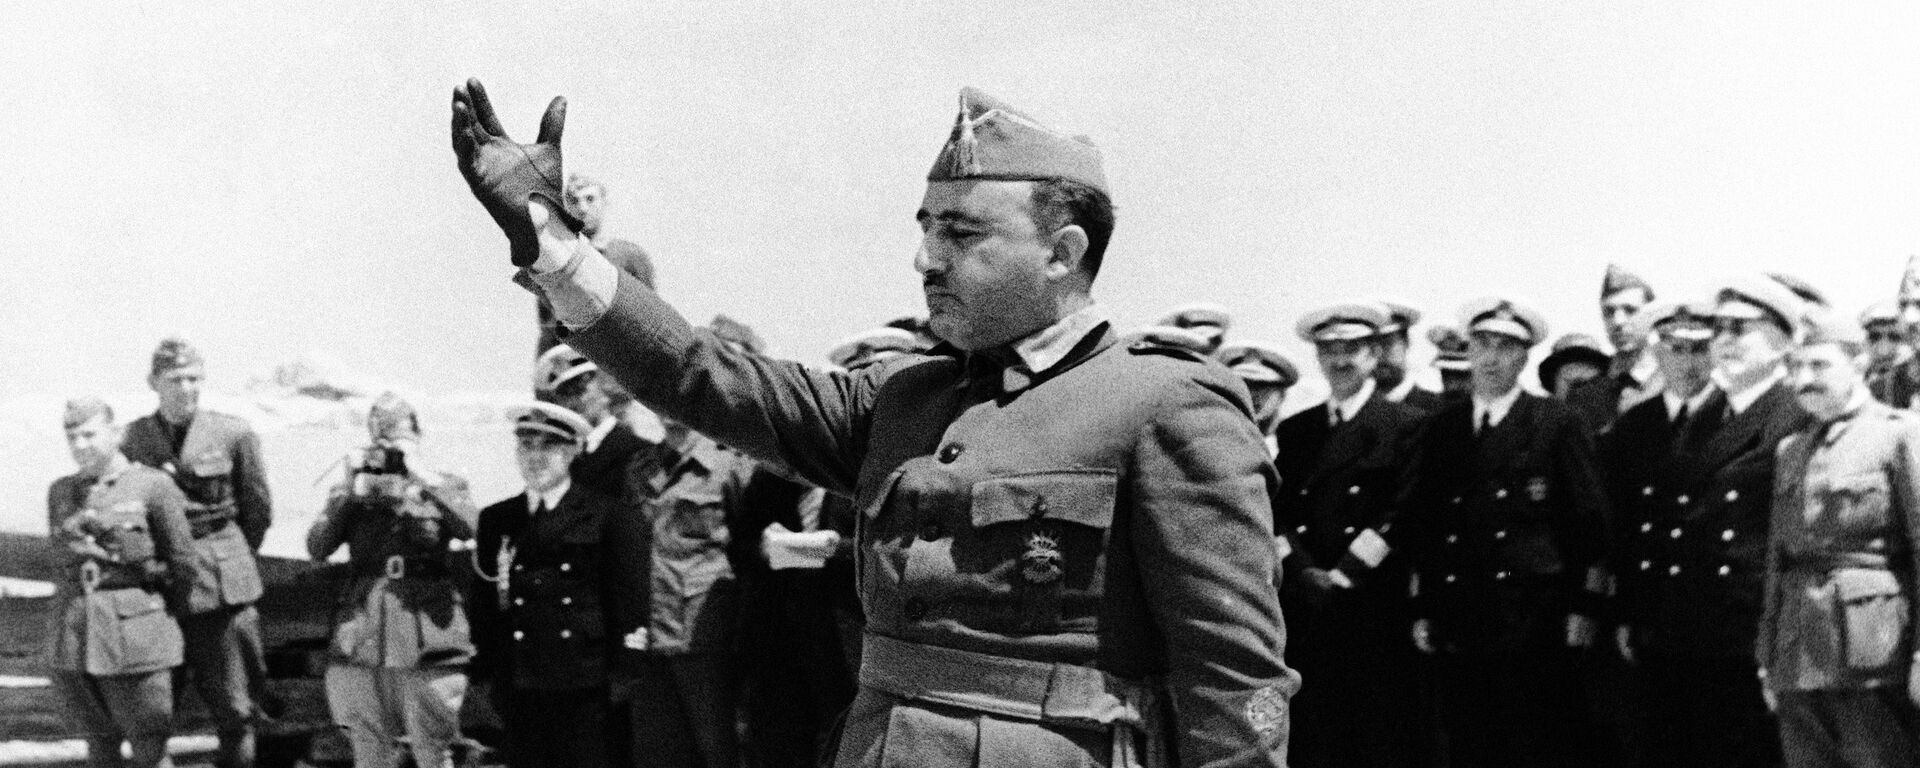 Francisco Franco, dictador español - Sputnik Mundo, 1920, 29.07.2020